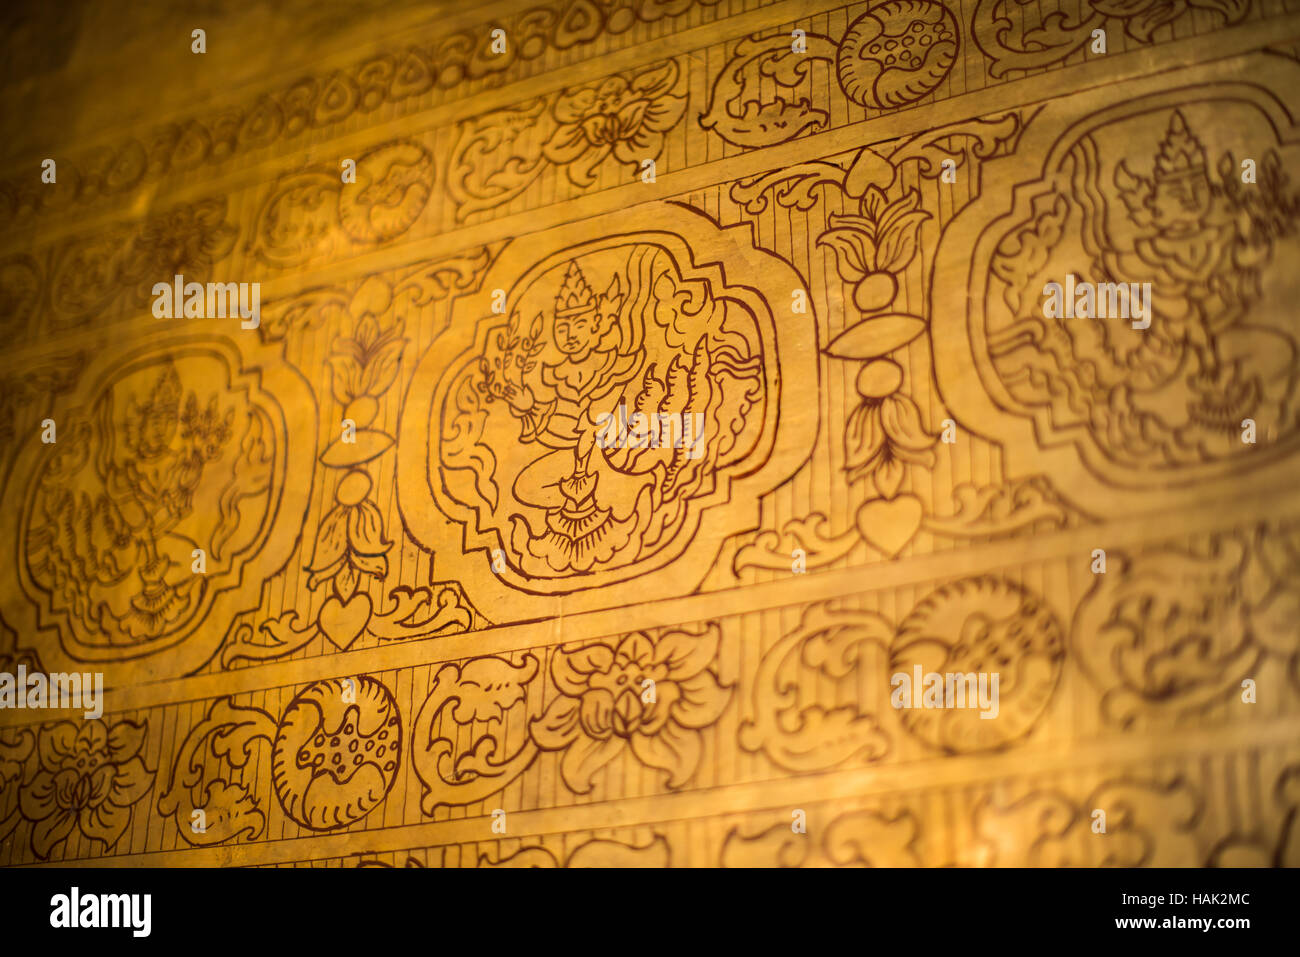 MANDALAY, Myanmar - Mahamuni Tempio del Buddha (noto anche come Pagoda Mahamuni) è altamente venerato sito religioso di Mandalay. Il suo cuore è il Buddha Mahamuni image, rinomato per essere uno dei soli cinque fattezze originale del Buddha fatta durante il suo ciclo di vita. È rivestito di lamina di oro donata a tributi da fedeli e pellegrini. Foto Stock